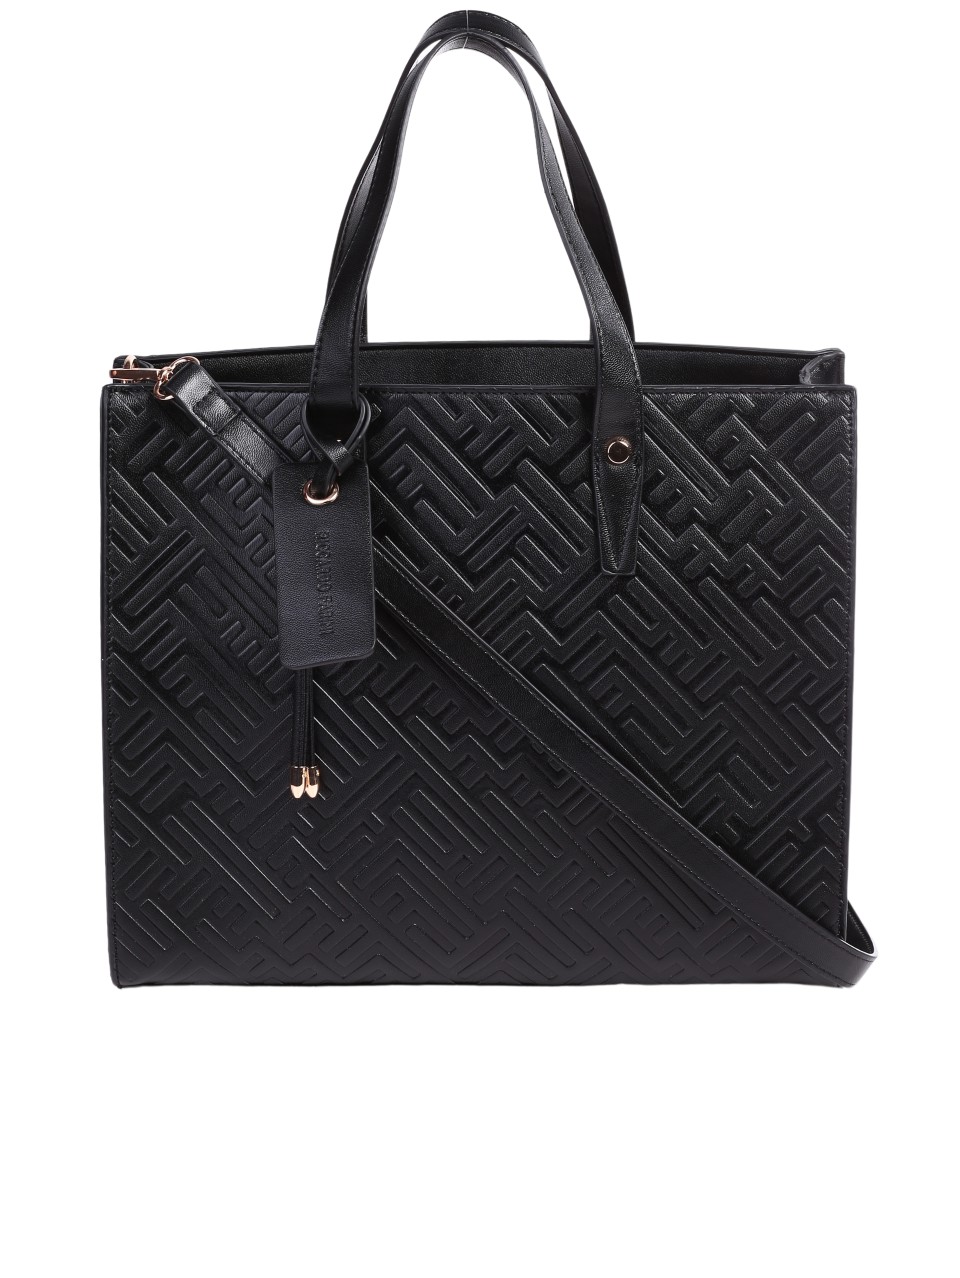 Елегантна дамска чанта в черно 9V-24305 black